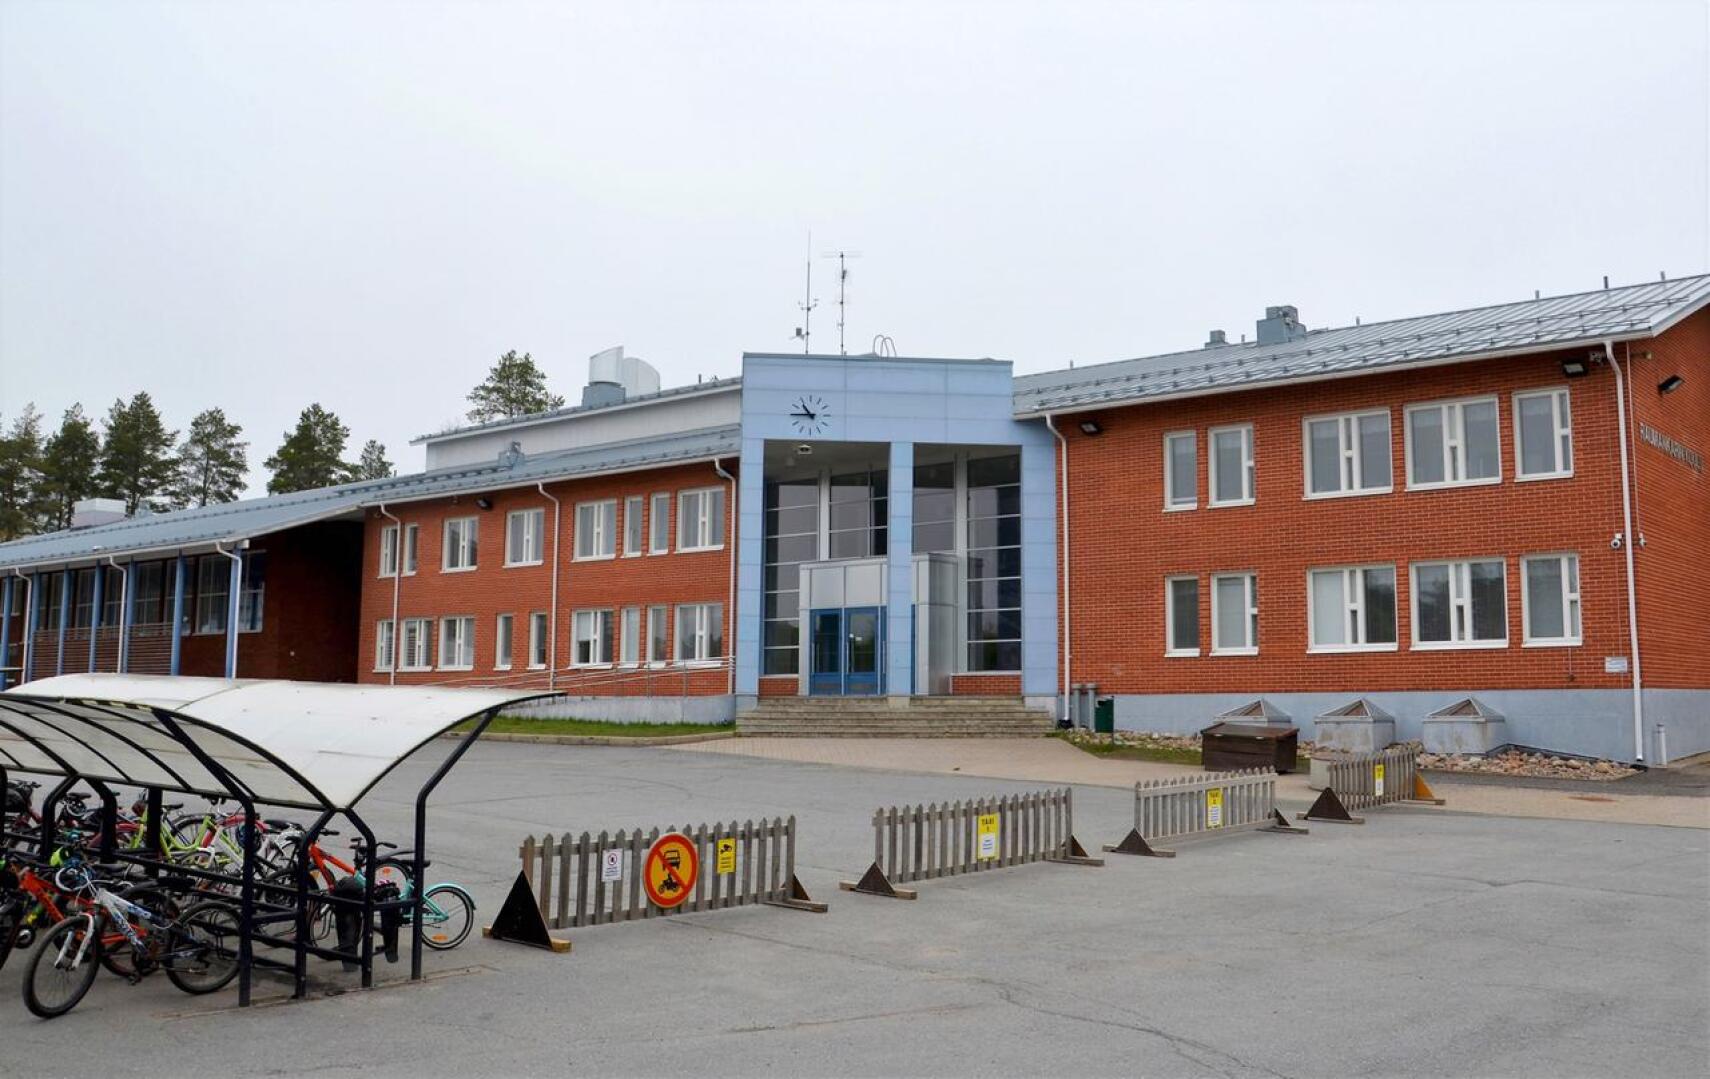 Yhtä erityisopettajan vakanssia ollaan siirtämässä pois Raumankarin koululta.